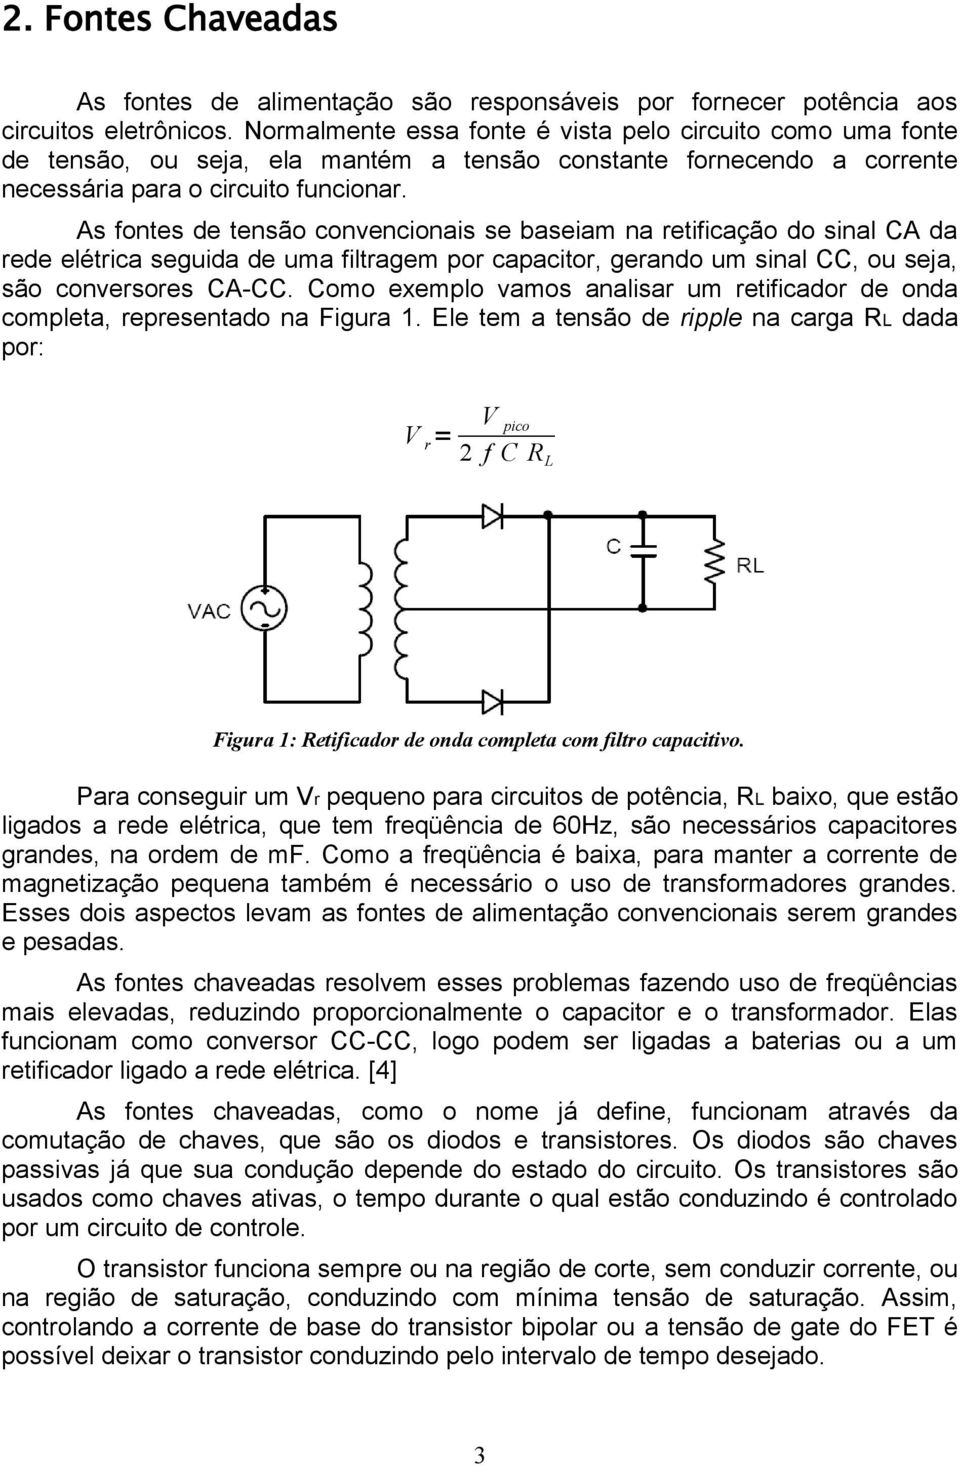 As fontes de tensão convencionais se baseiam na retificação do sinal CA da rede elétrica seguida de uma filtragem por capacitor, gerando um sinal CC, ou seja, são conversores CA-CC.